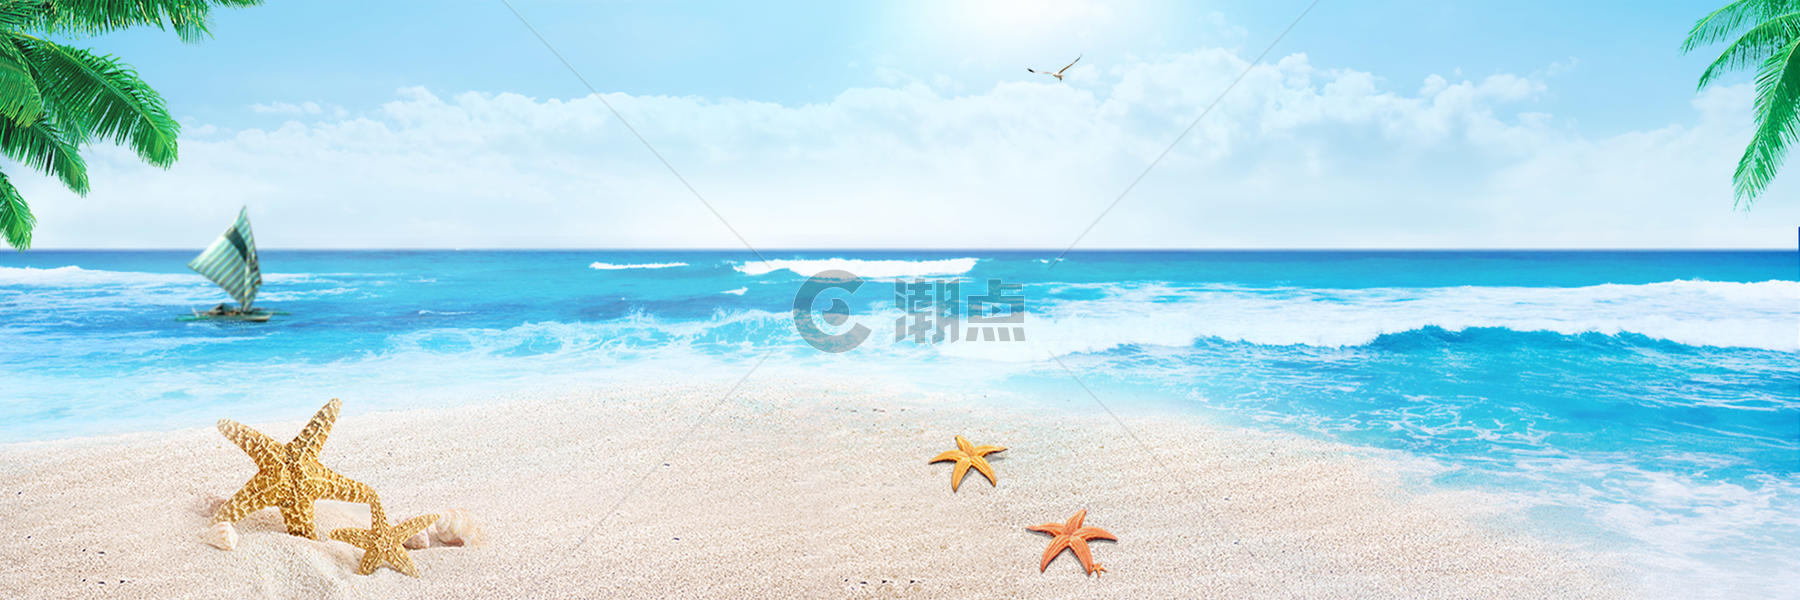 清凉海滩背景图片素材免费下载